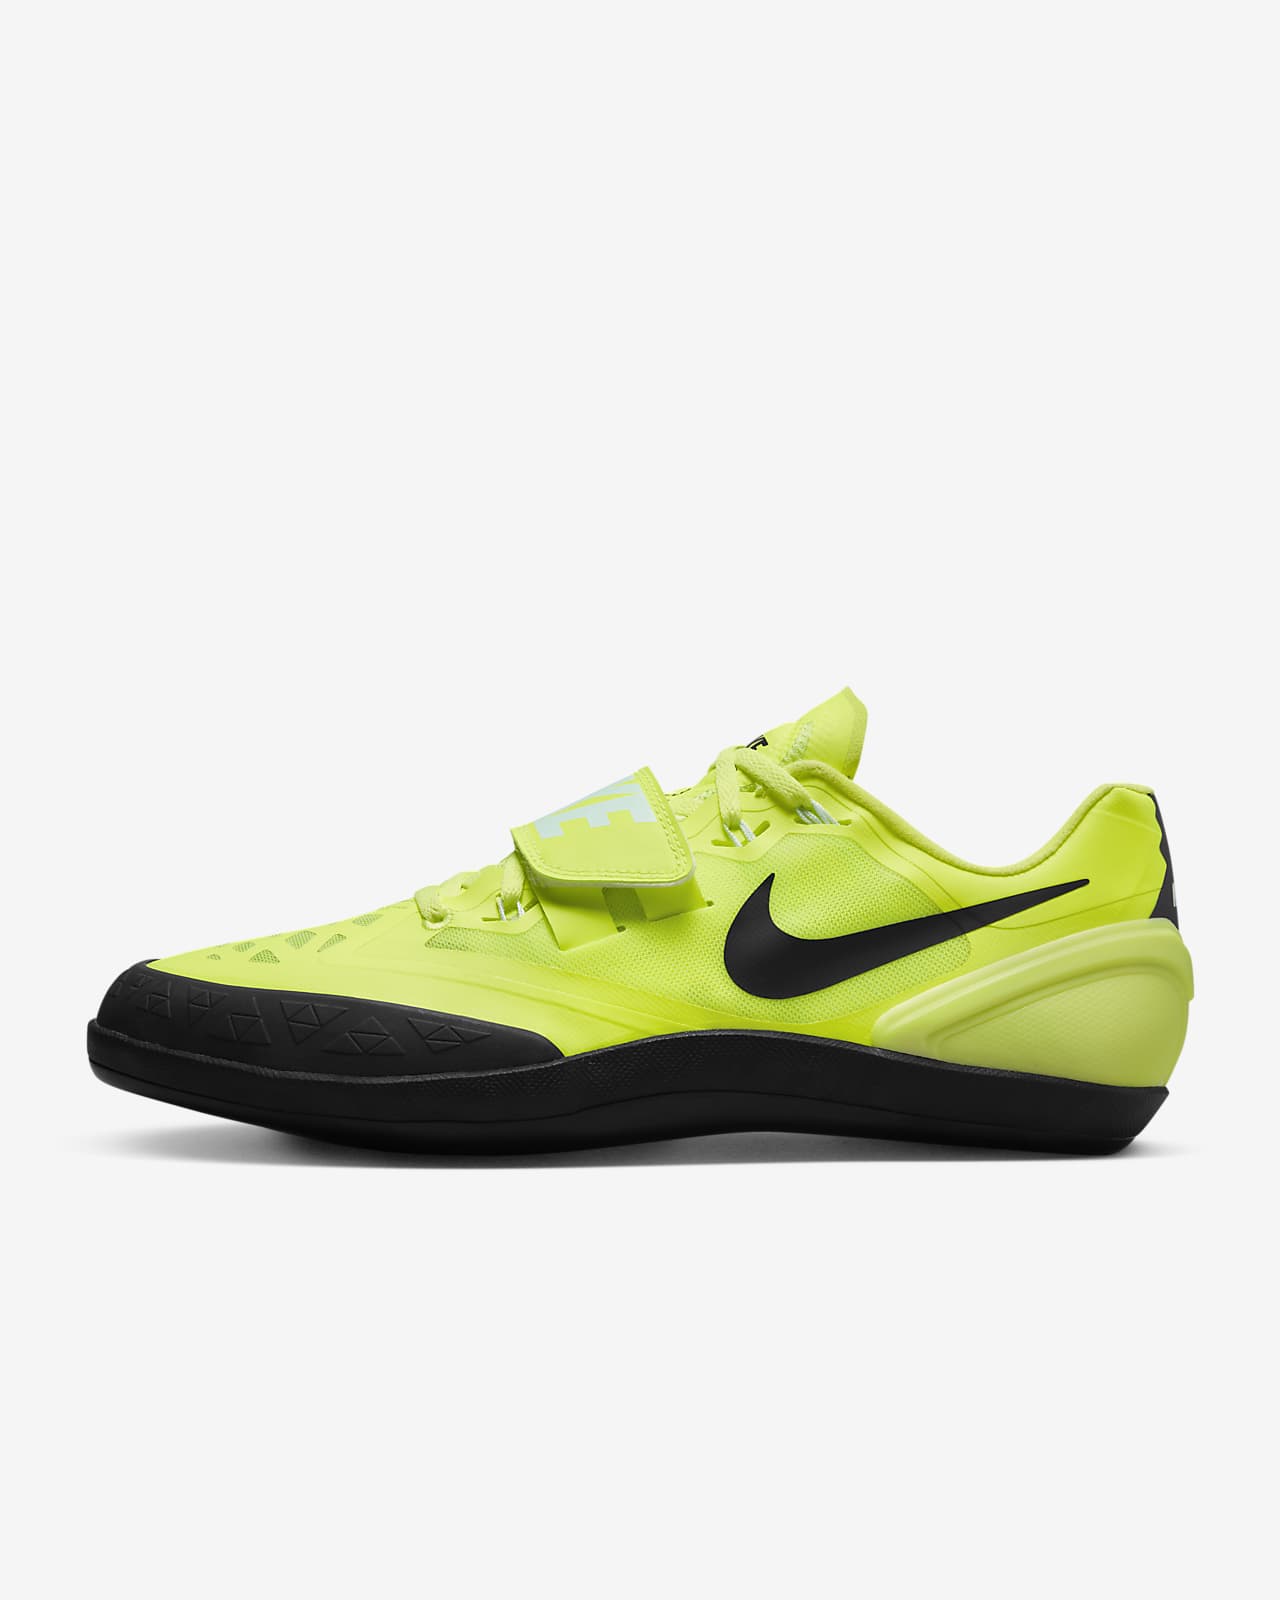 Παπούτσια στίβου για αθλήματα ρίψεων Nike Zoom Rotational 6